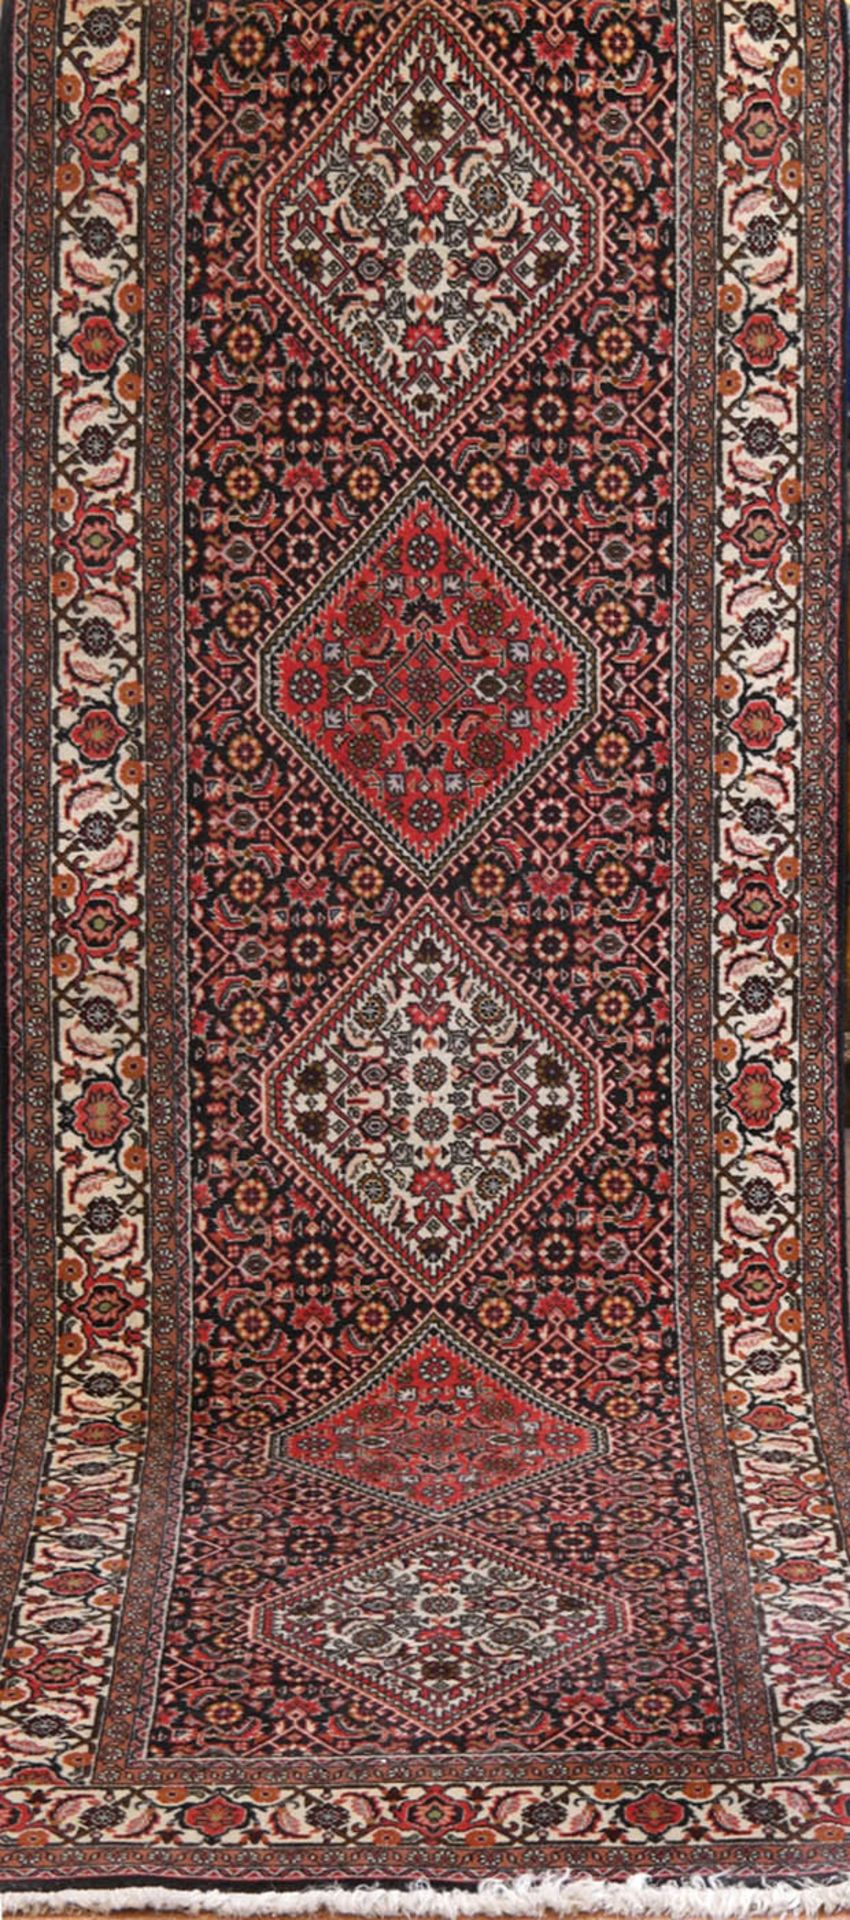 Galerie, Bidjar, Persien, dunkelgrundig mit Rautendekor und floralem Muster, 284x83 cm